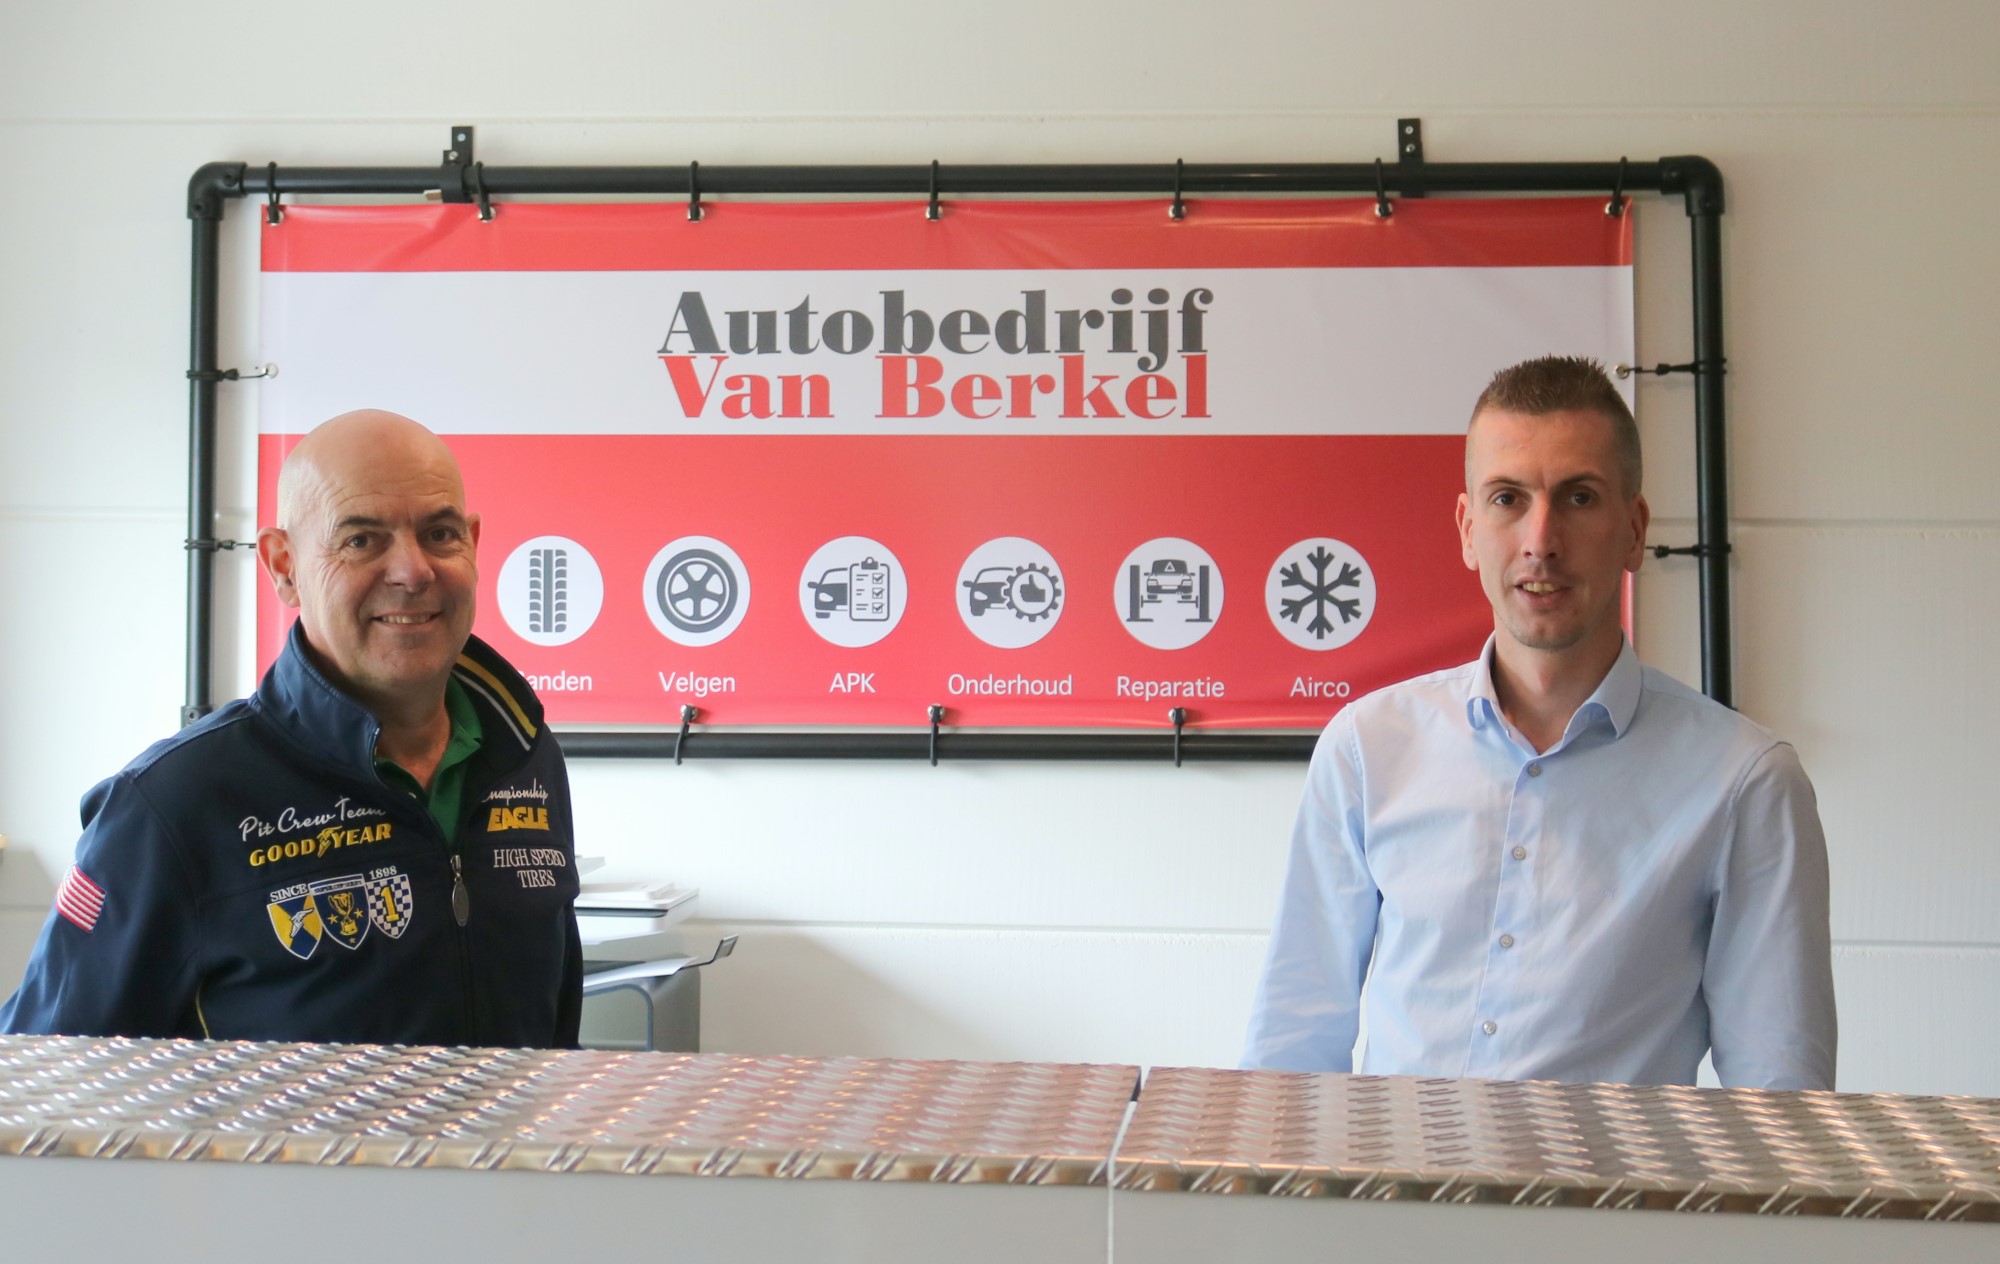 Autobedrijf van Berkel Steenwijk